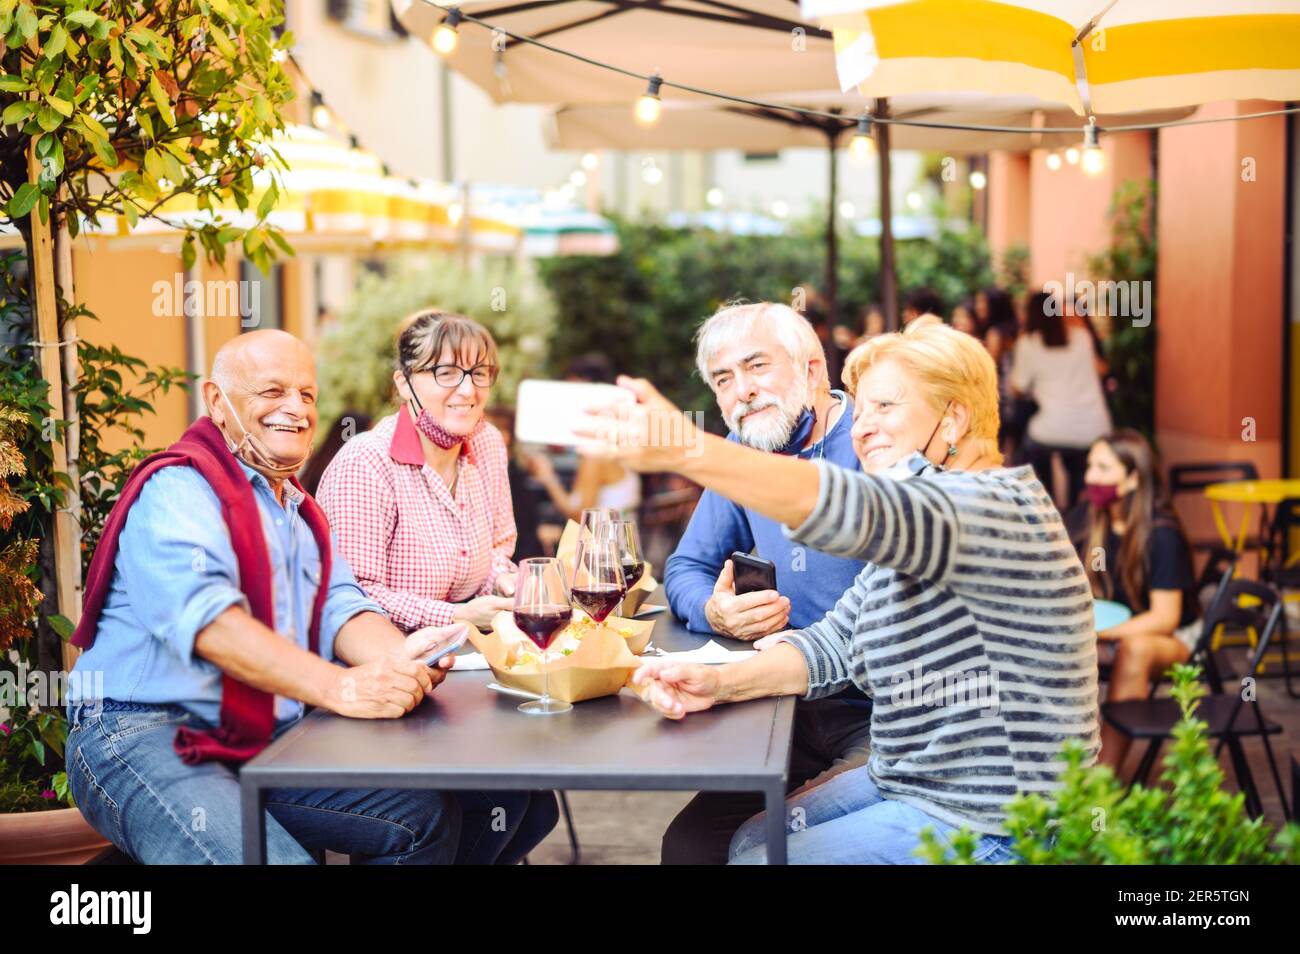 Le coppie anziane bevono vino rosso al bar con maschere facciali Protezione - nuovo concetto di stile di vita normale con persone felici che hanno divertimento insieme prendendo un selfie Foto Stock